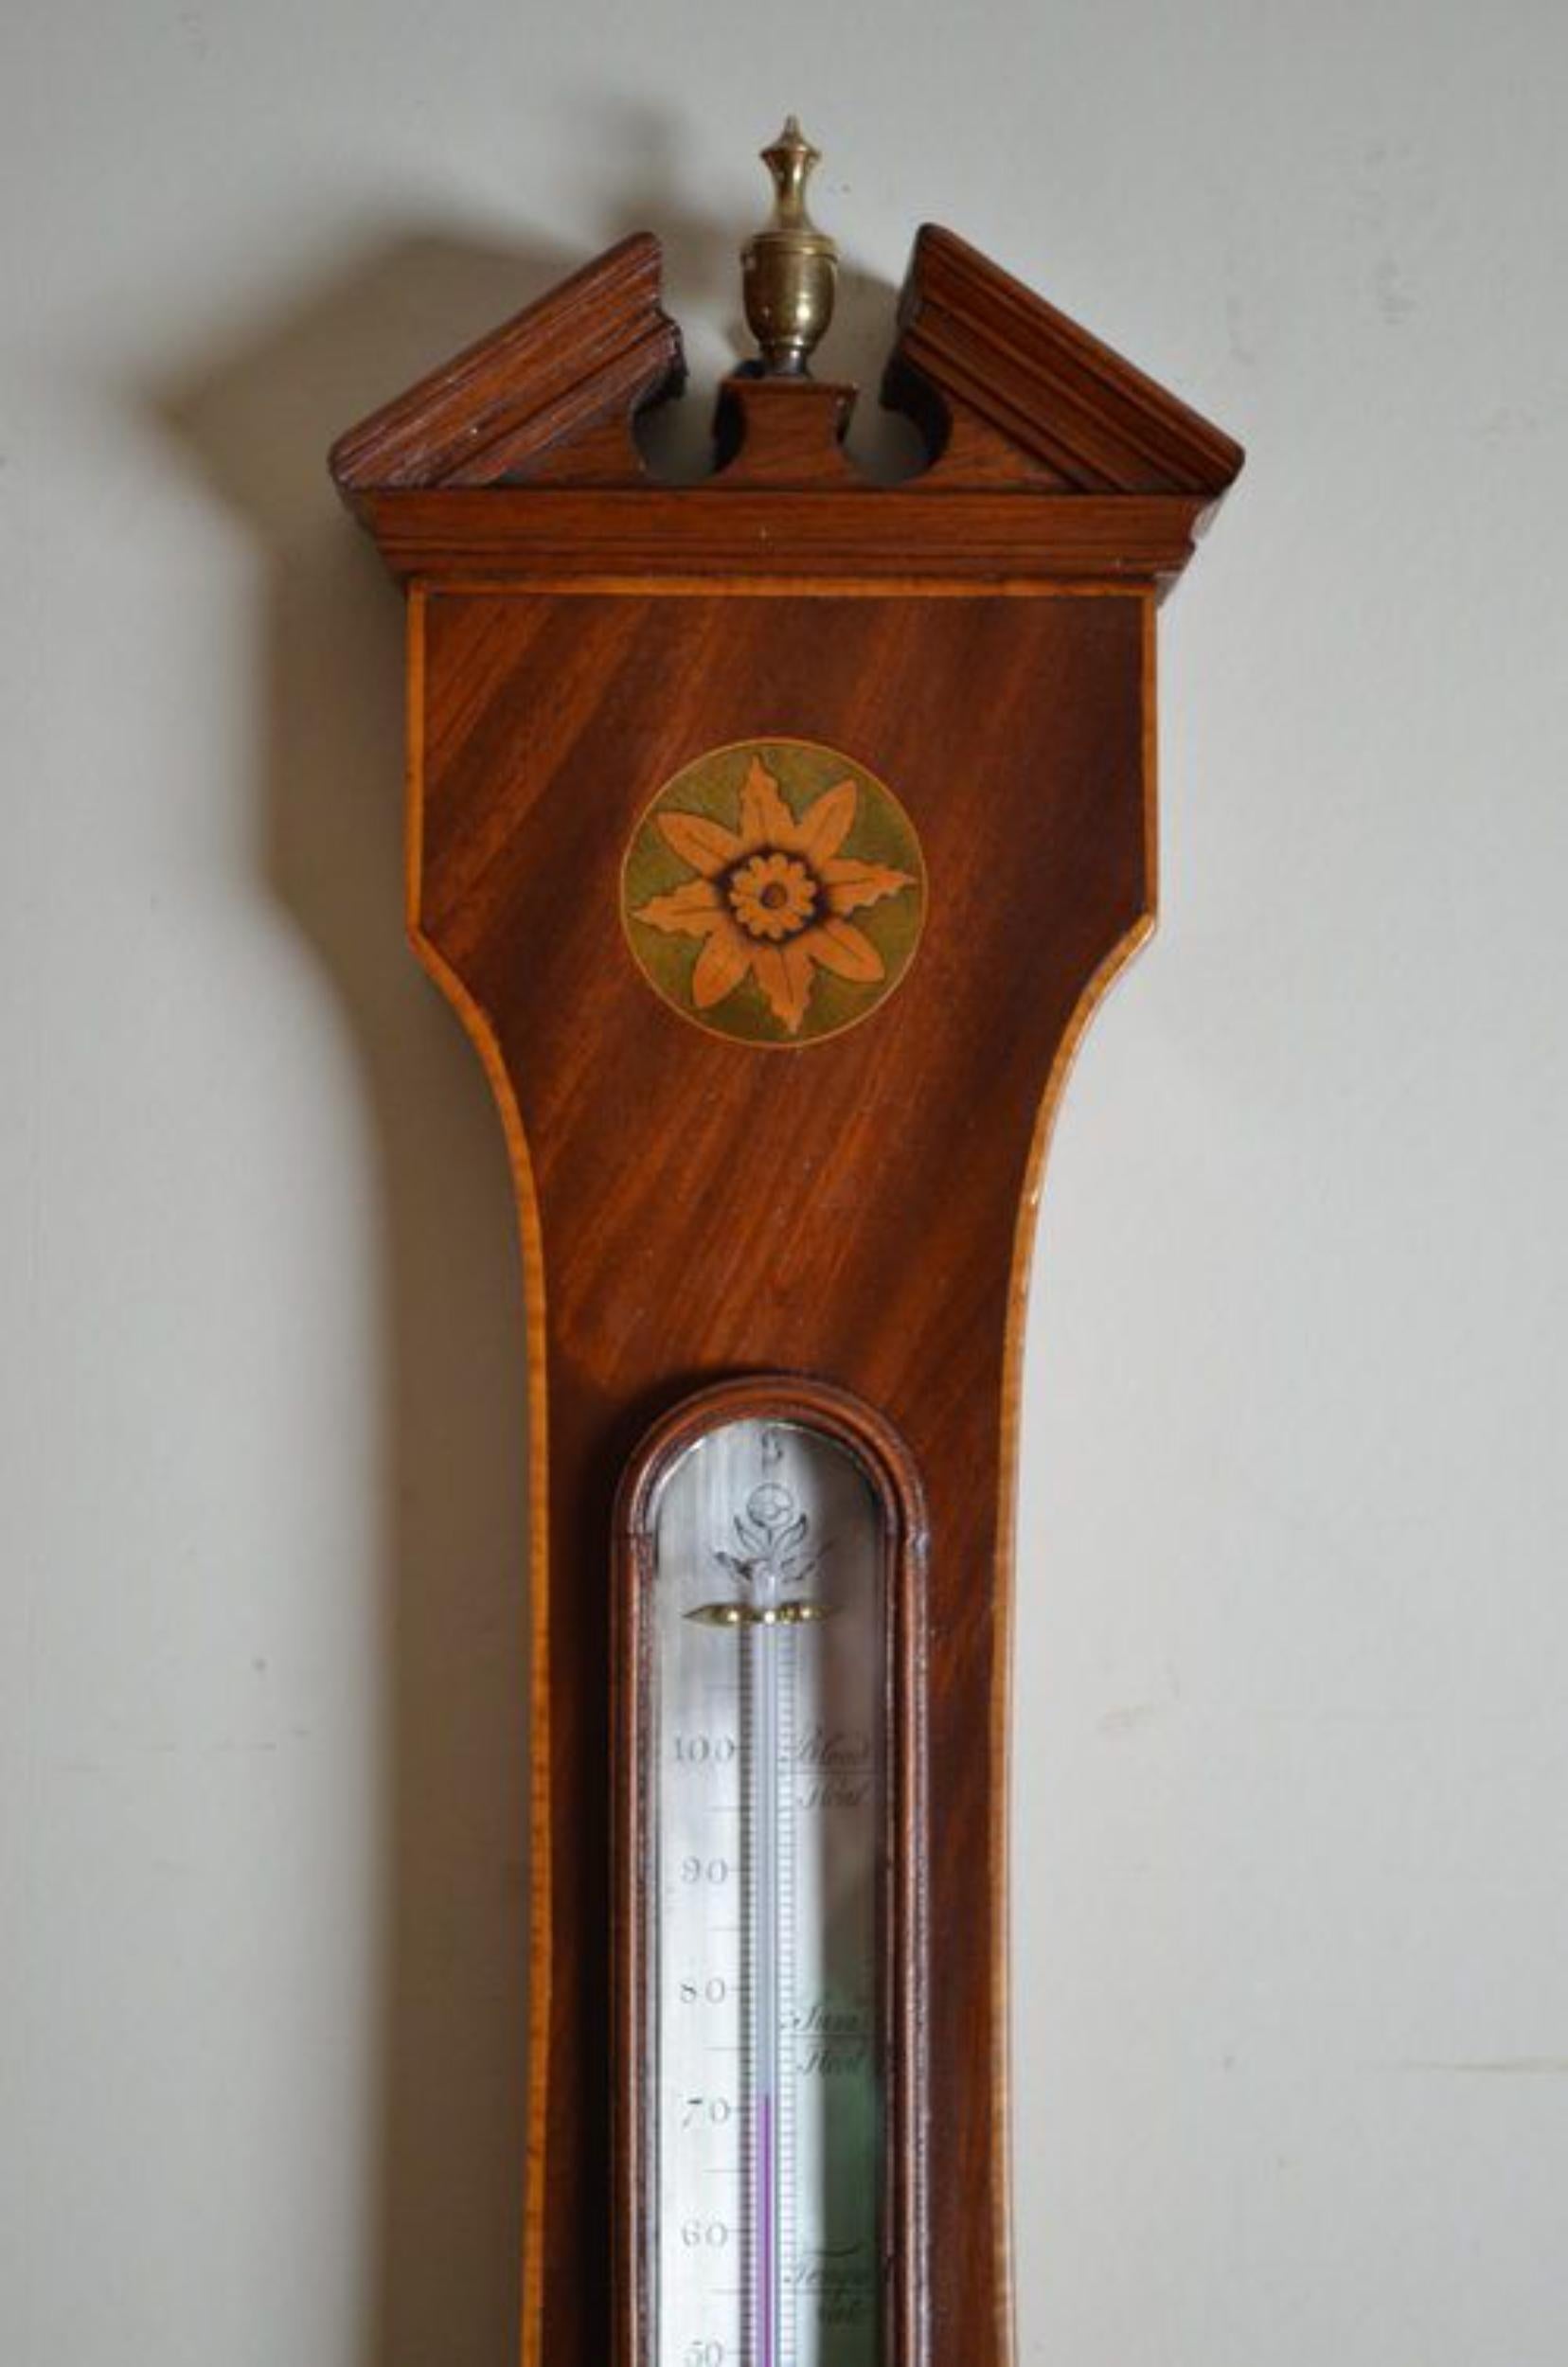 SN2487 Hochwertiges und sehr attraktives Regency-Radbarometer von Ortelli & Co, mit versilbertem Thermometer und Zifferblatt in einem Mahagonigehäuse mit Blumen- und Muschelintarsien und dreieckigem Giebel mit Messingknauf oben. um 1820
Maße: H39